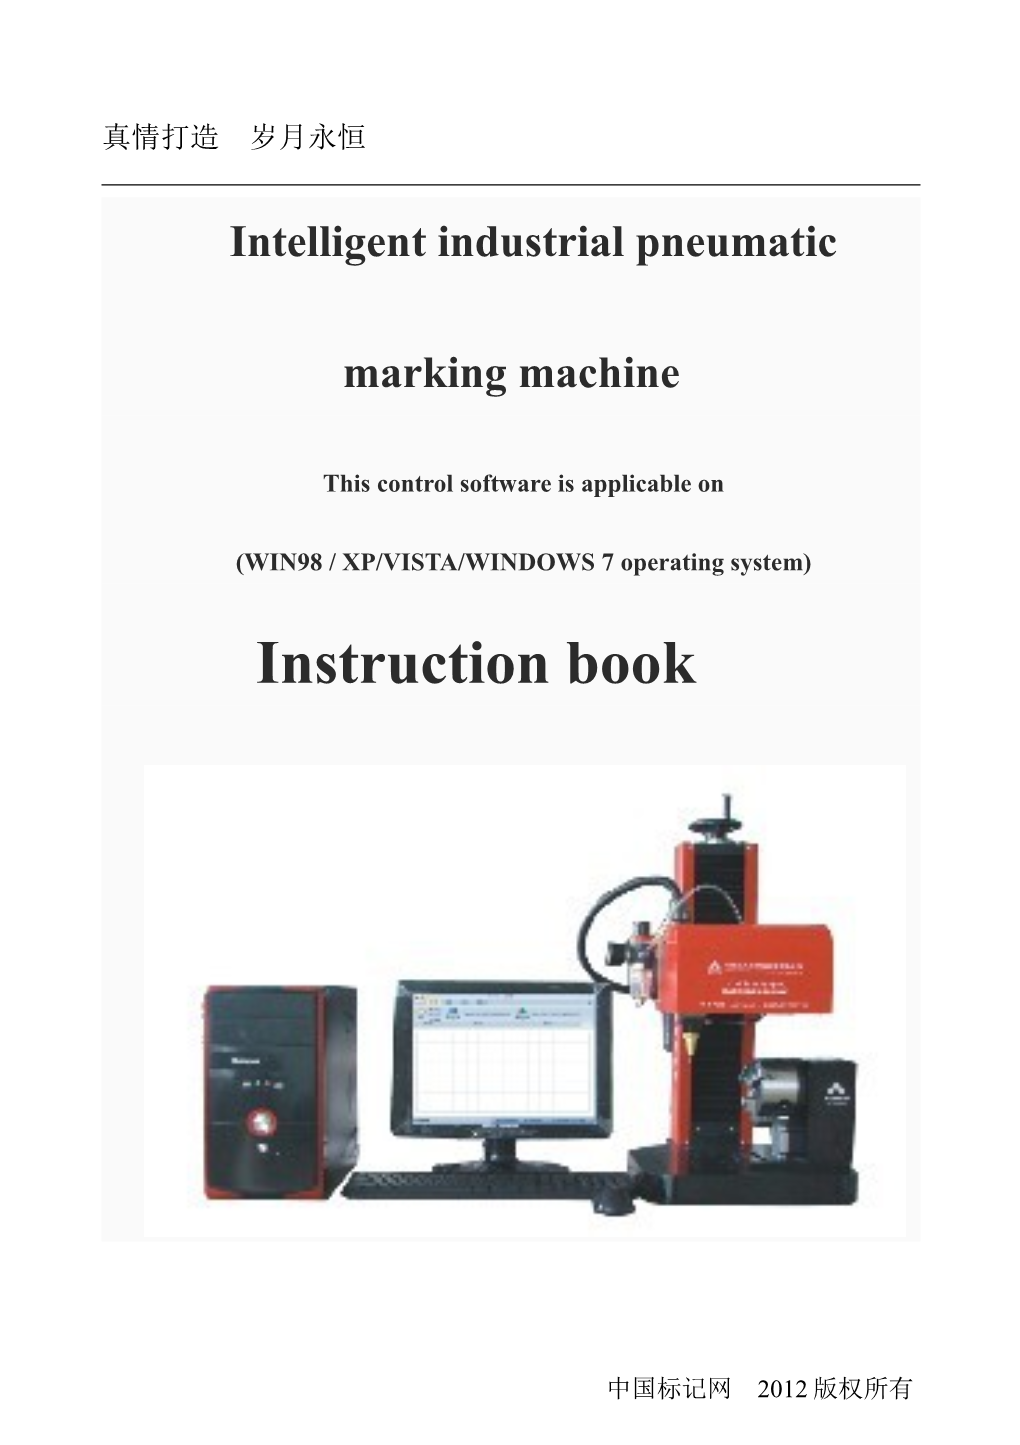 Intelligent Industrialpneumatic Marking Machine